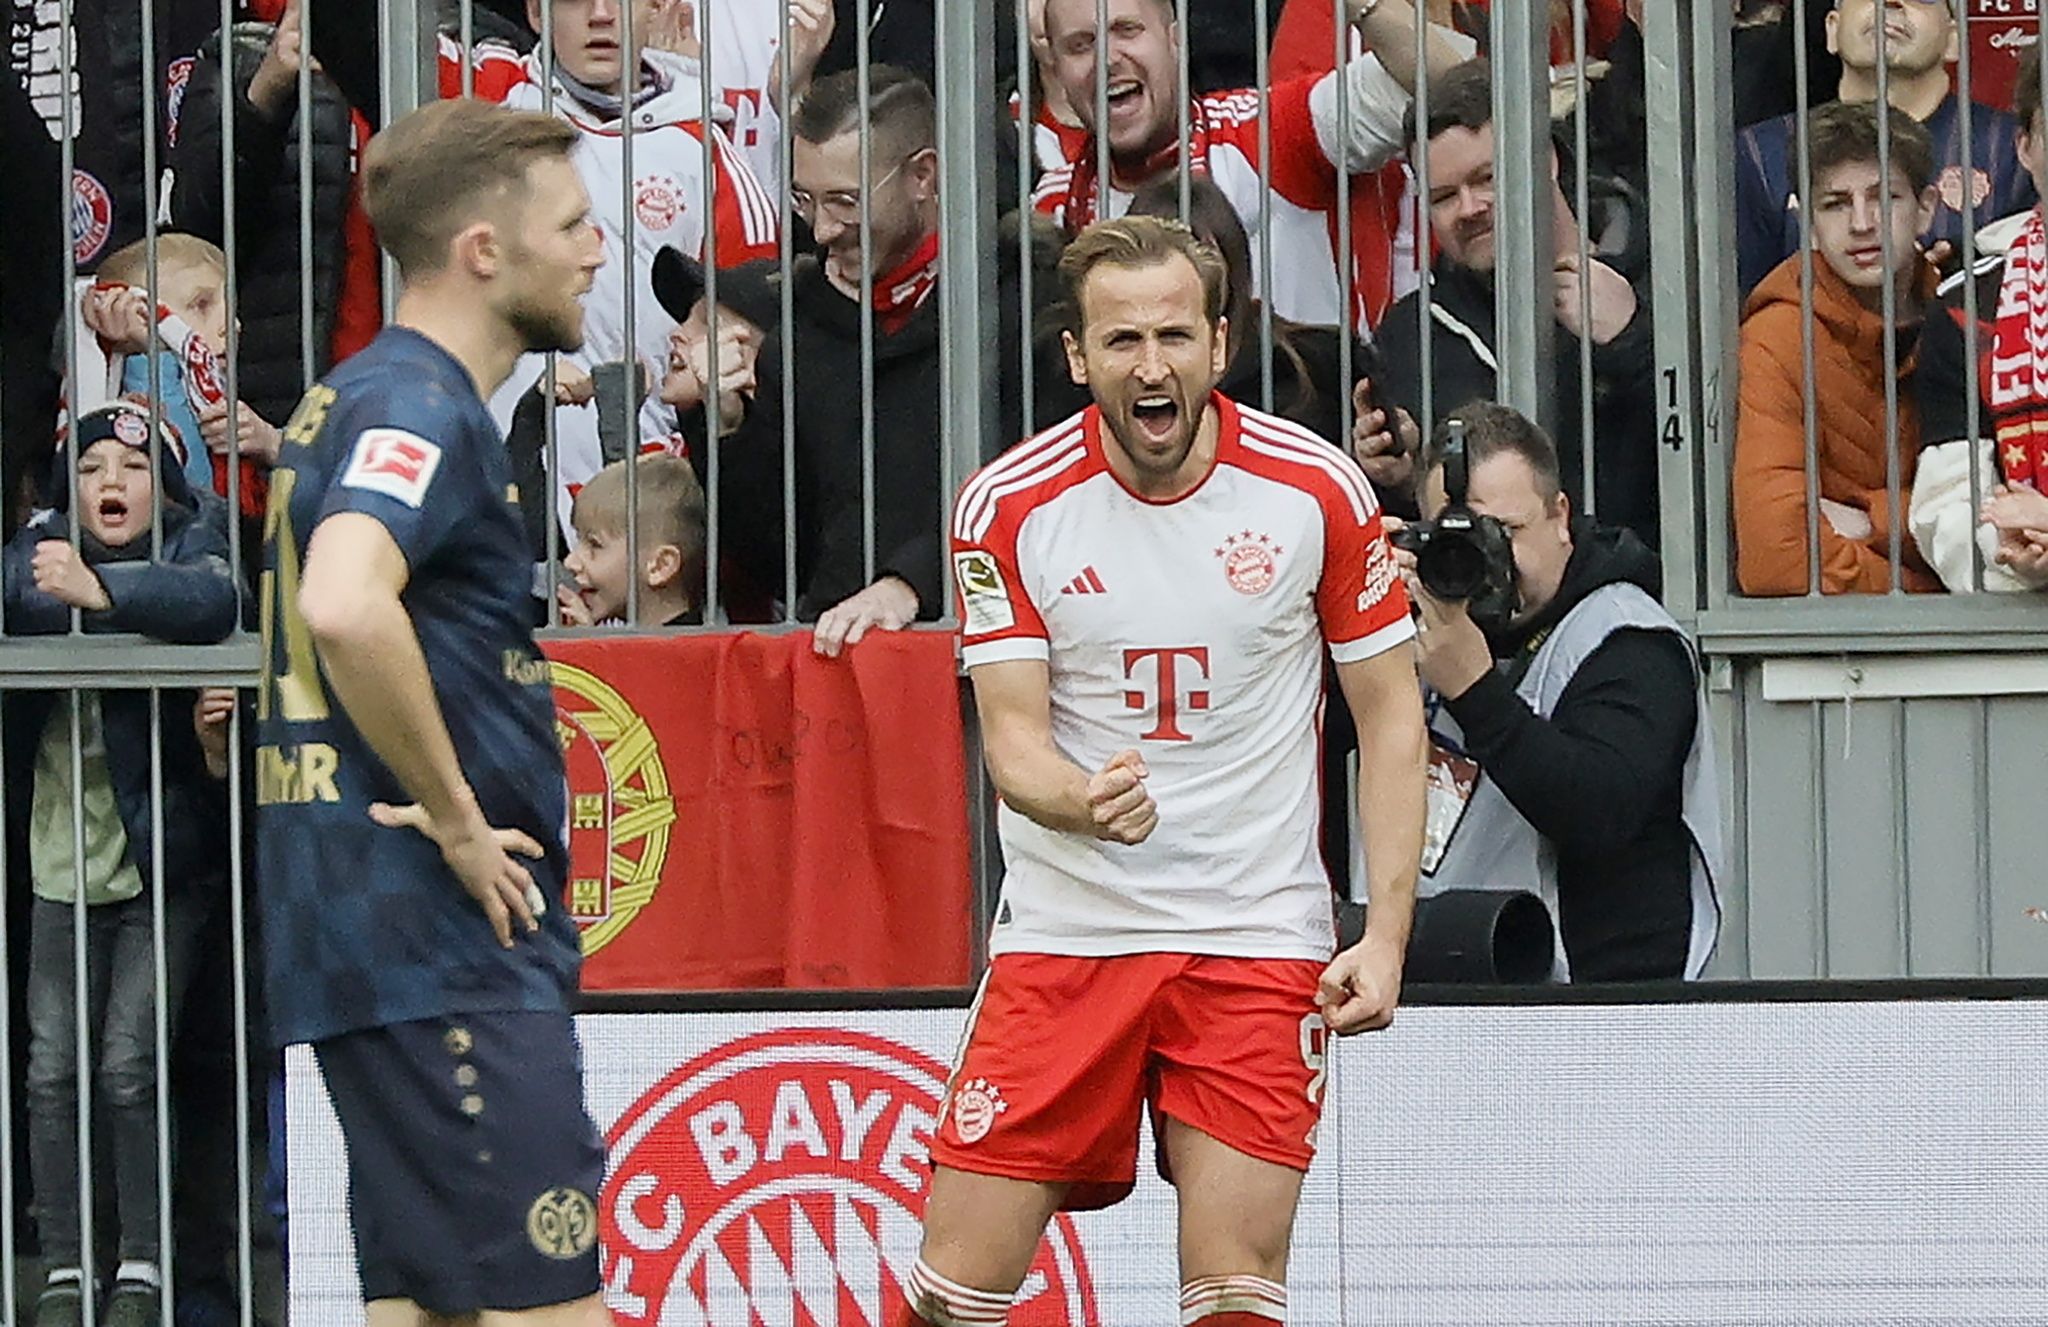 Bayern Munichs Harry Kane (R) celebrates scoring